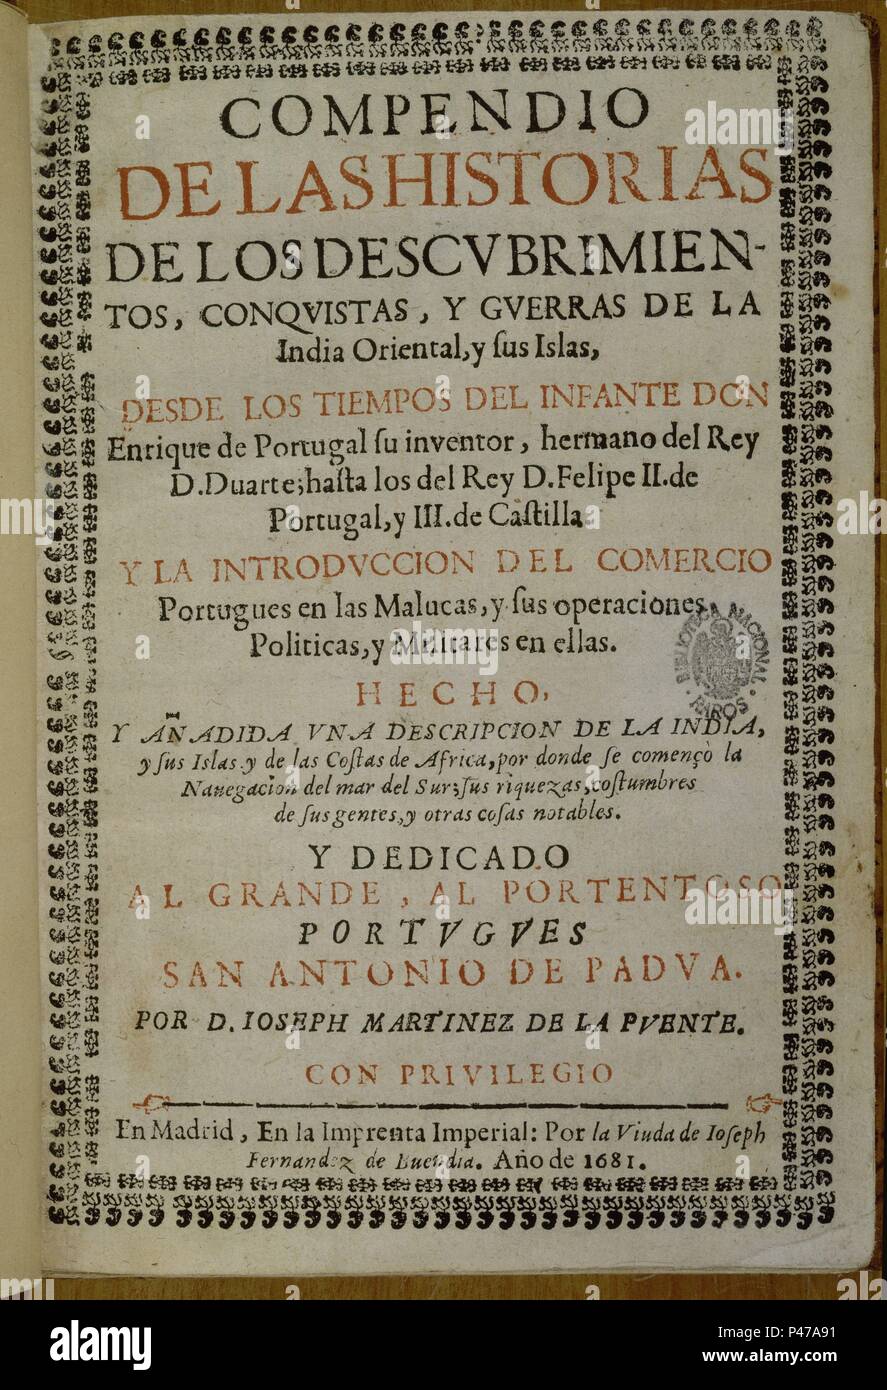 COMPENDIO DE Hª,CONQUISTA Y GUERRAS DE INDIA ORIENTAL Y SUS ISLAS-1681. Author: MARTINEZ LA PUENTE. Location: BIBLIOTECA NACIONAL-COLECCION, MADRID, SPAIN. Stock Photo